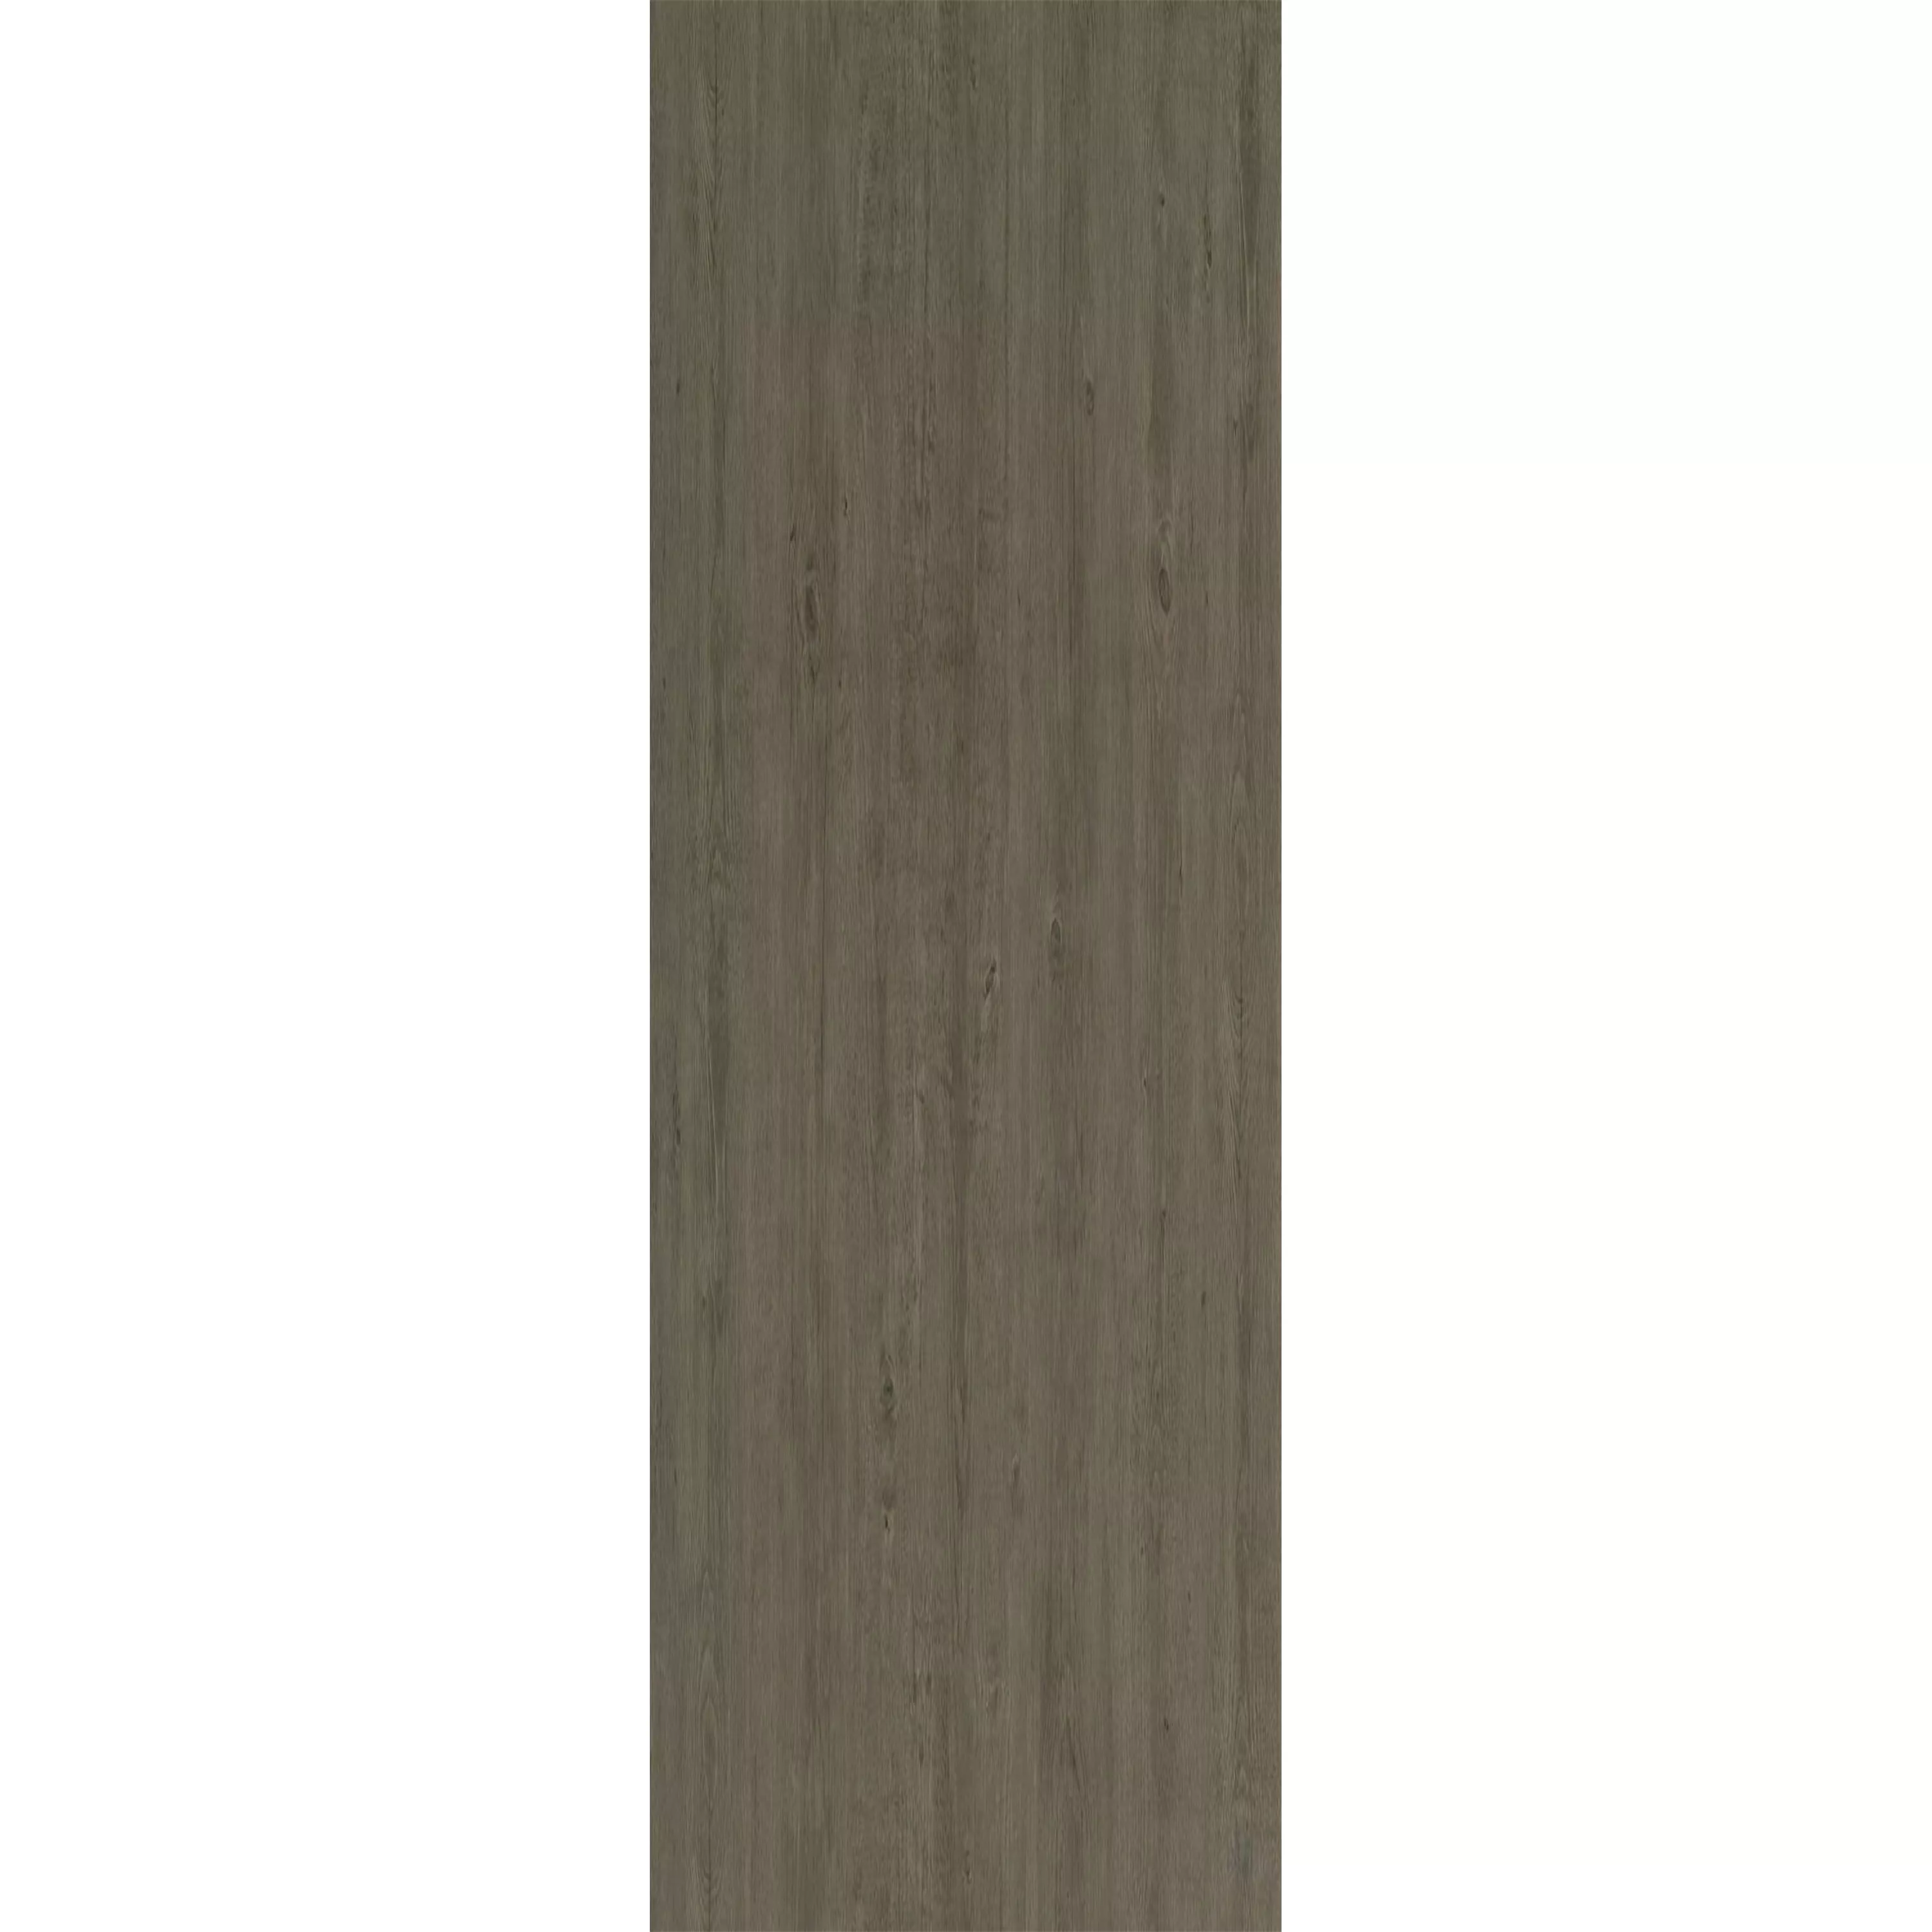 Podea De Vinil Sistem De Clic Woodford Taupe 17,2x121cm